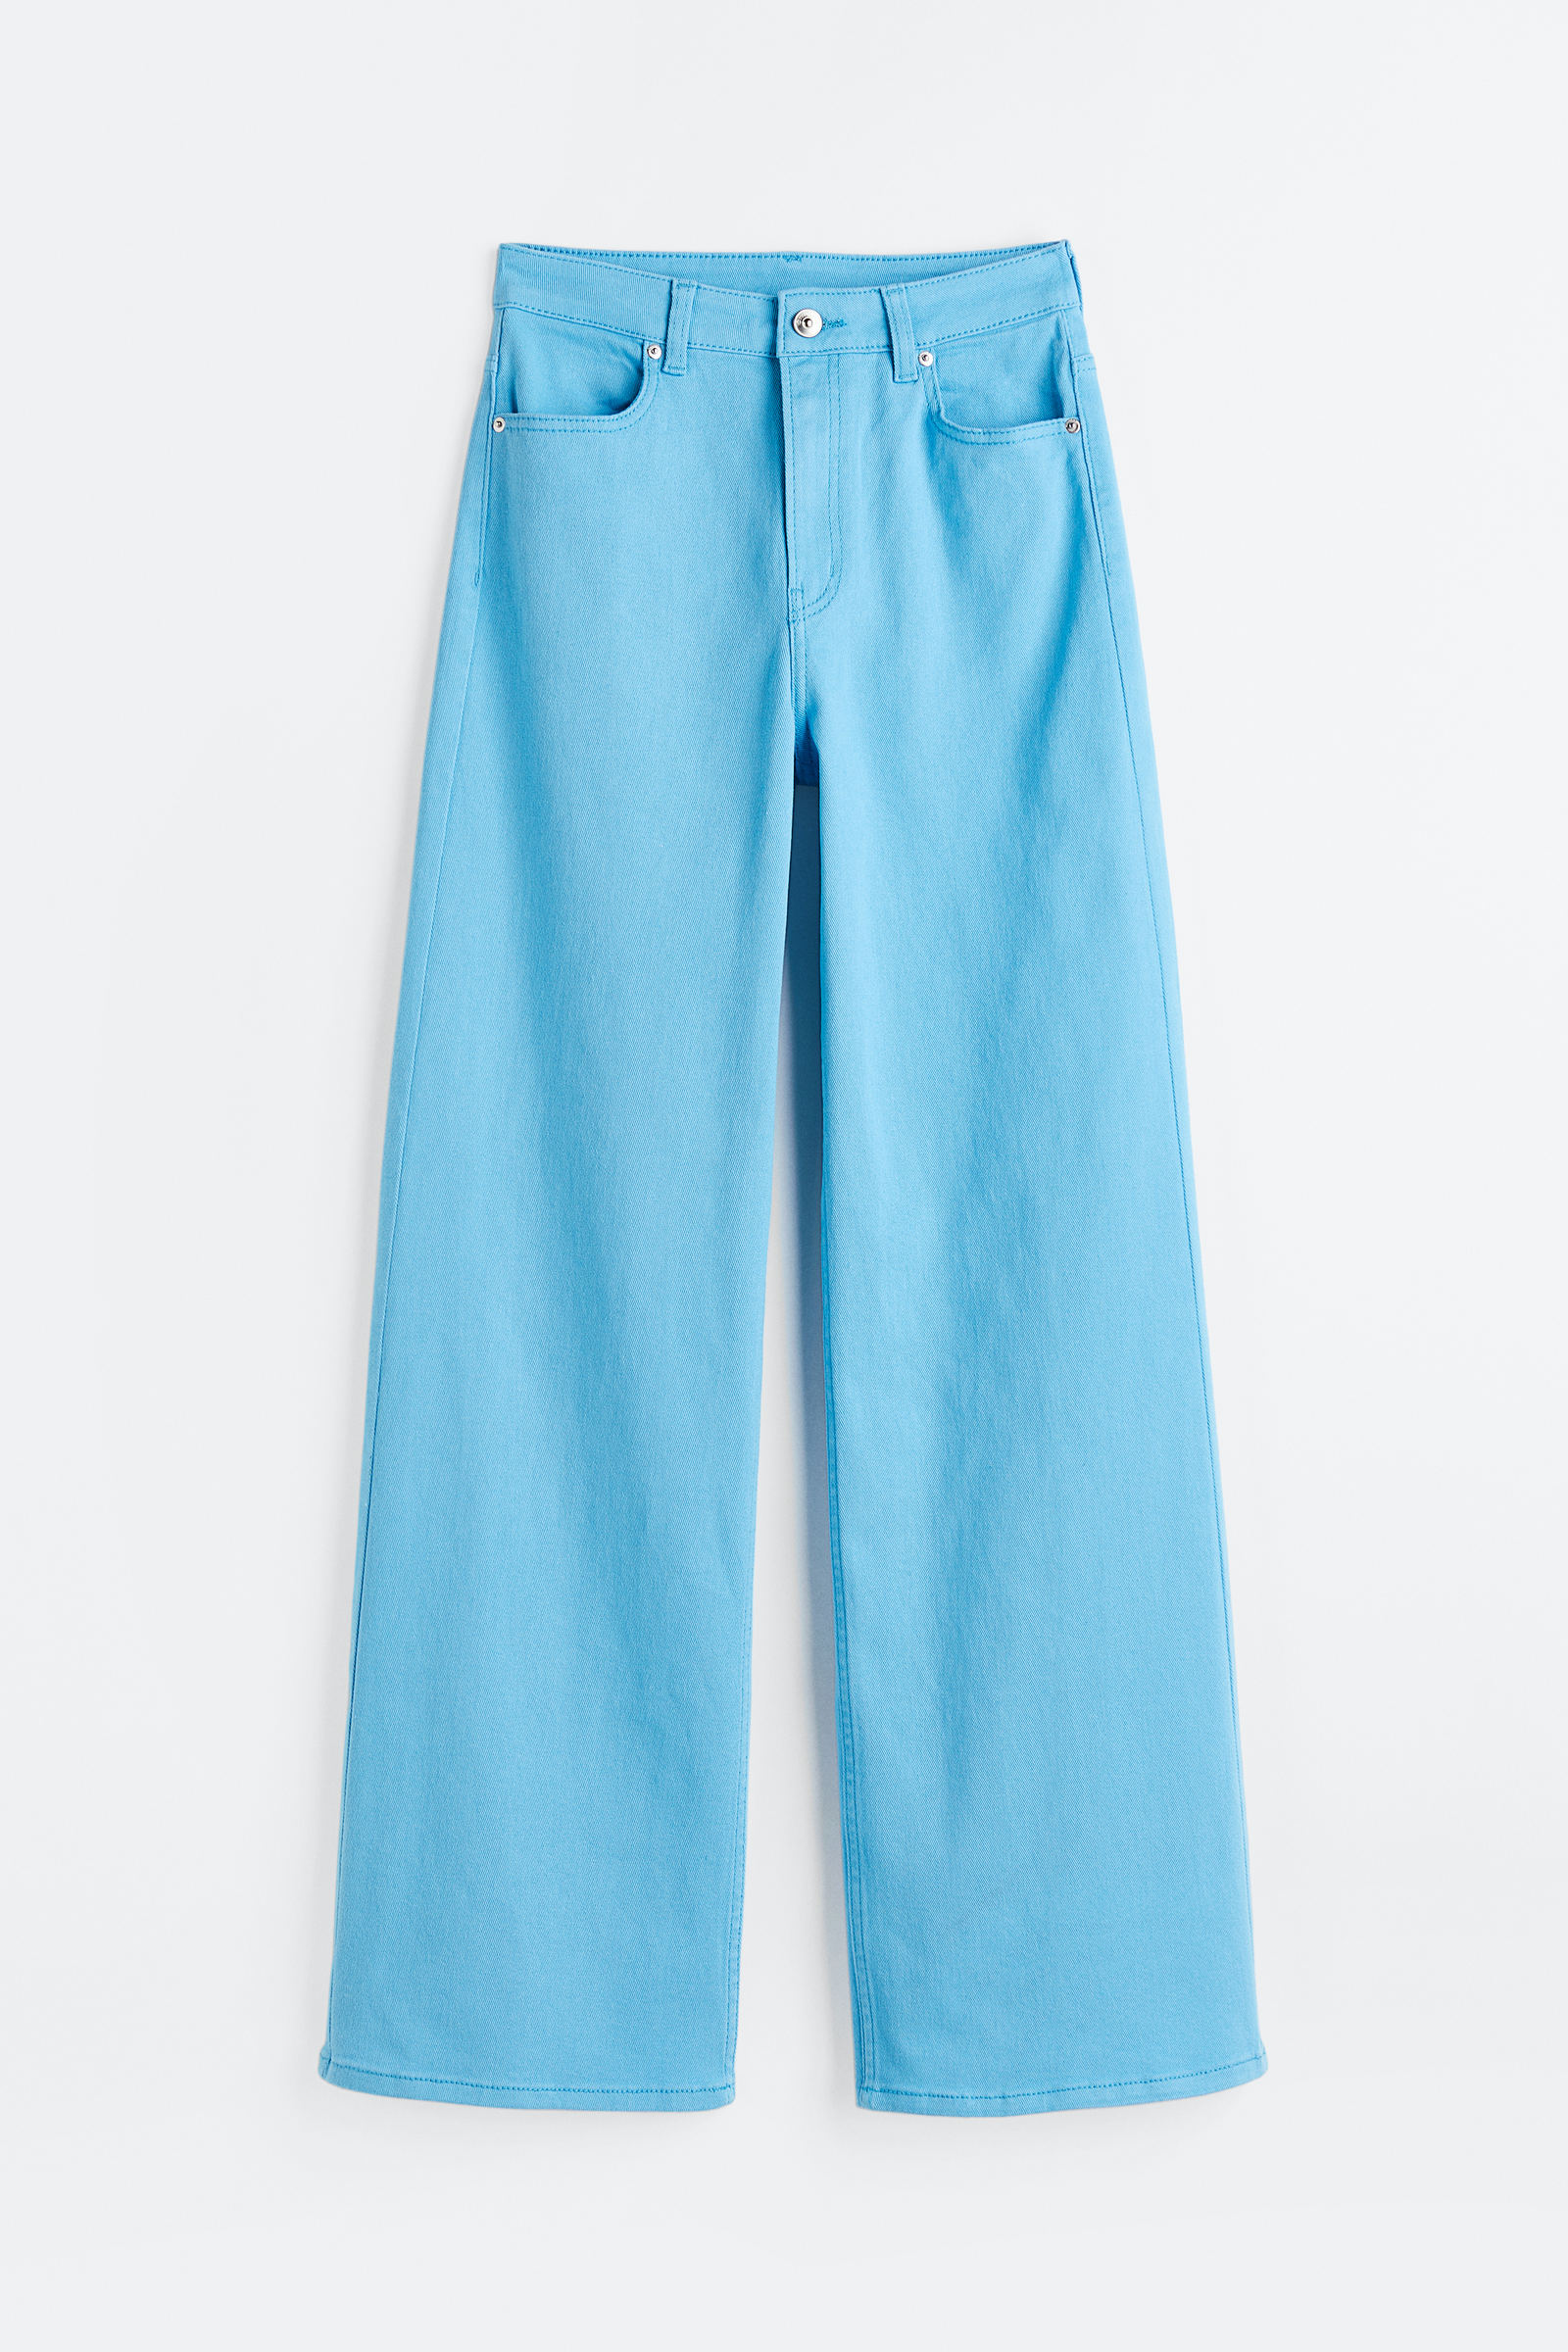 Pantalones para mujer - H&M UY